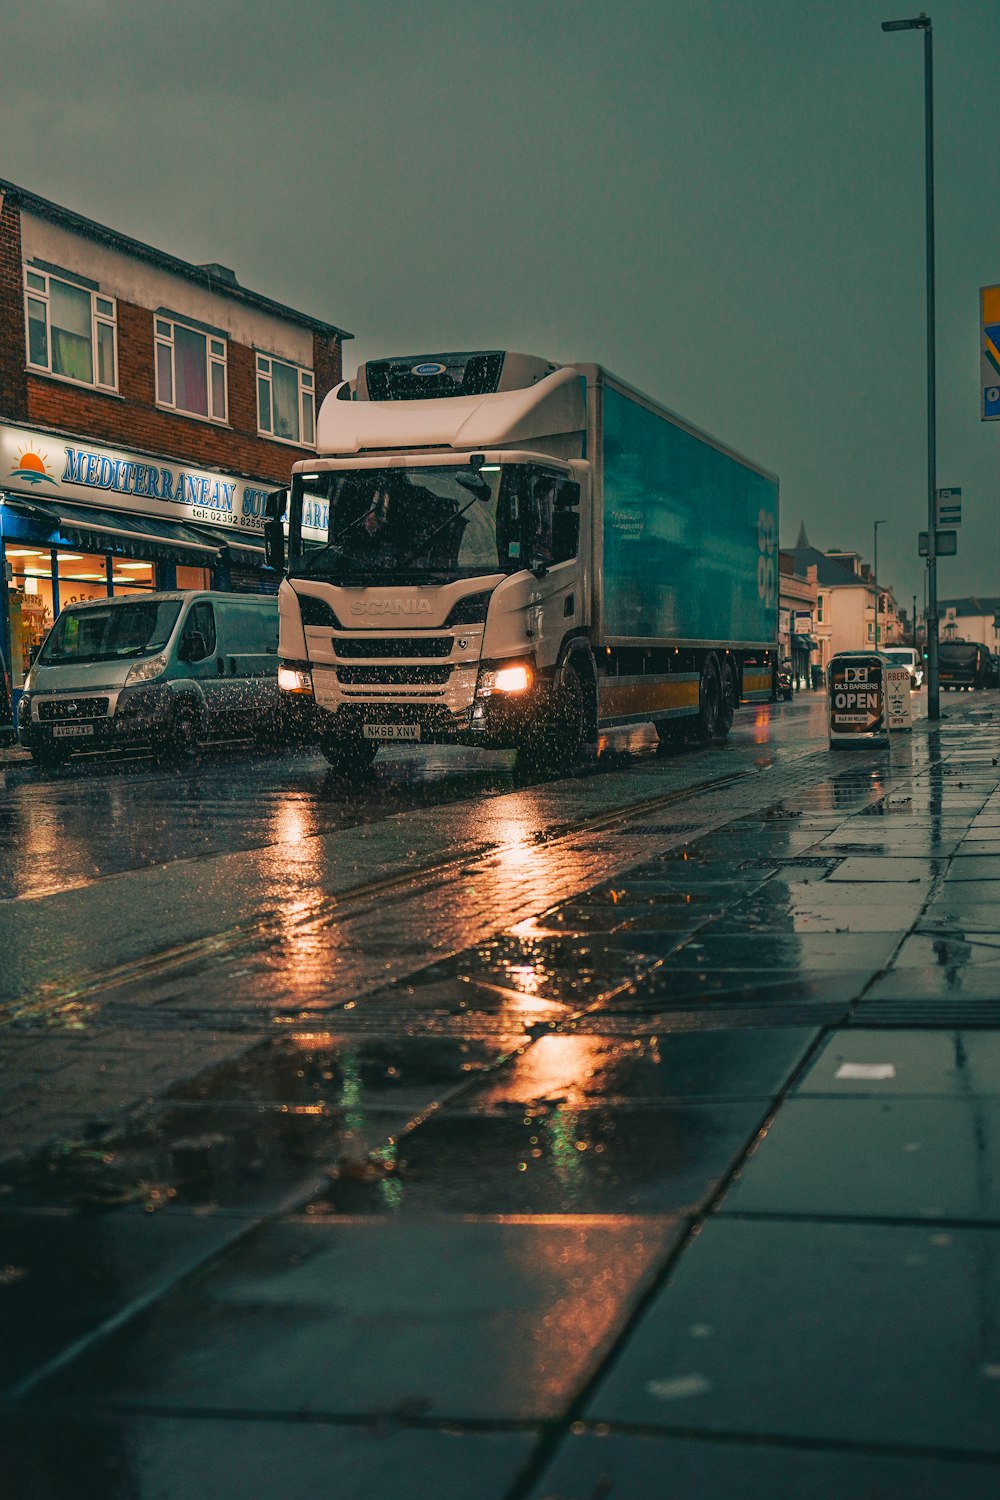 a truck on a wet street